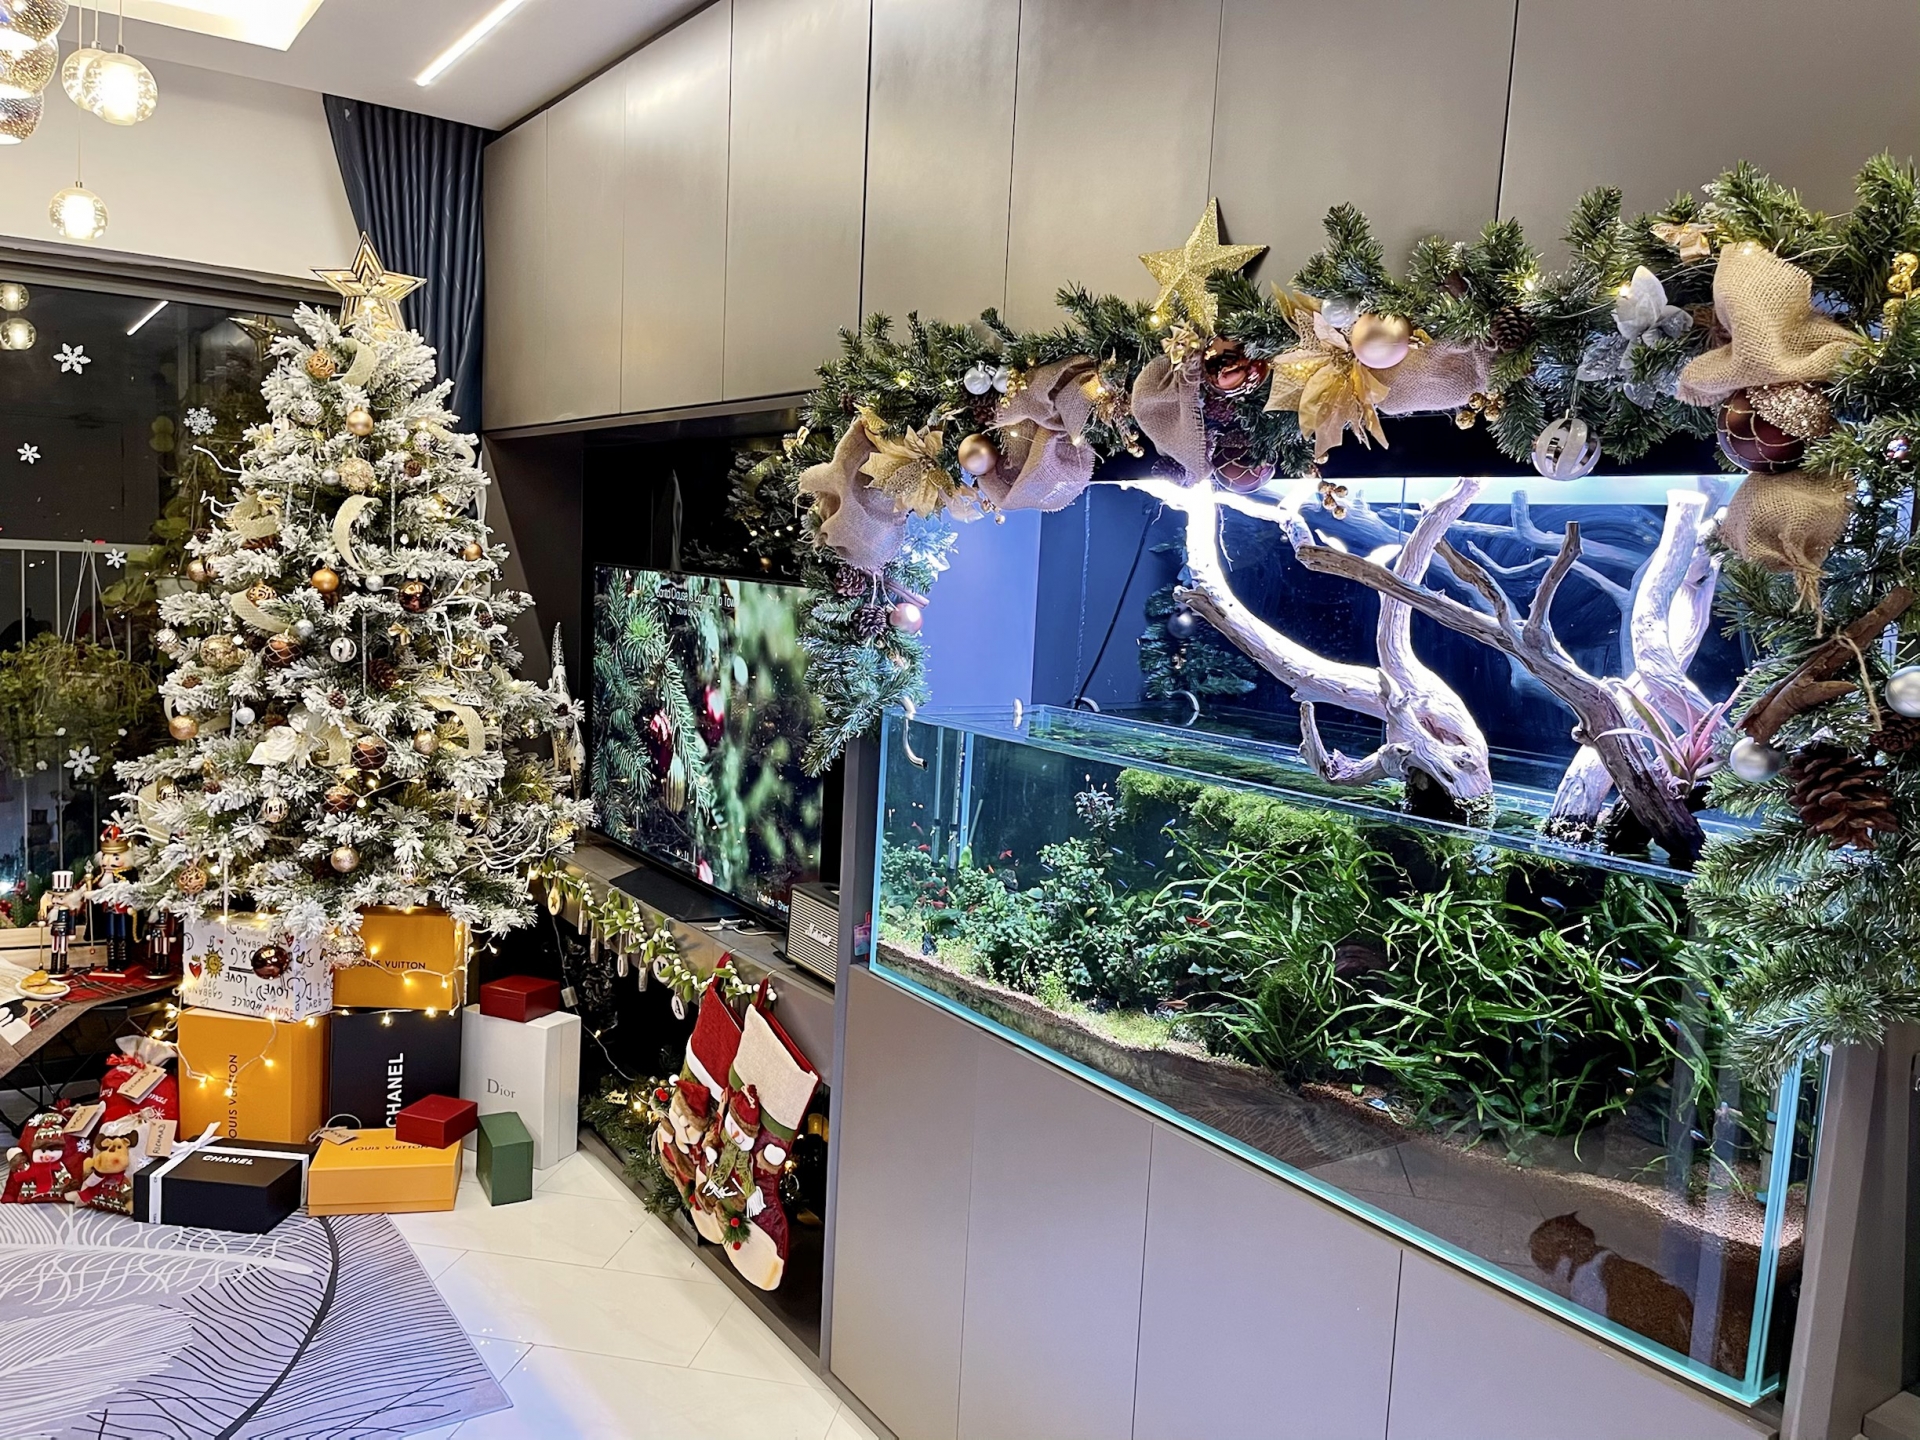 Phòng khách trang hoàng rực rỡ với cây thông Noel, hồ cá lung linh tuyệt đẹp.